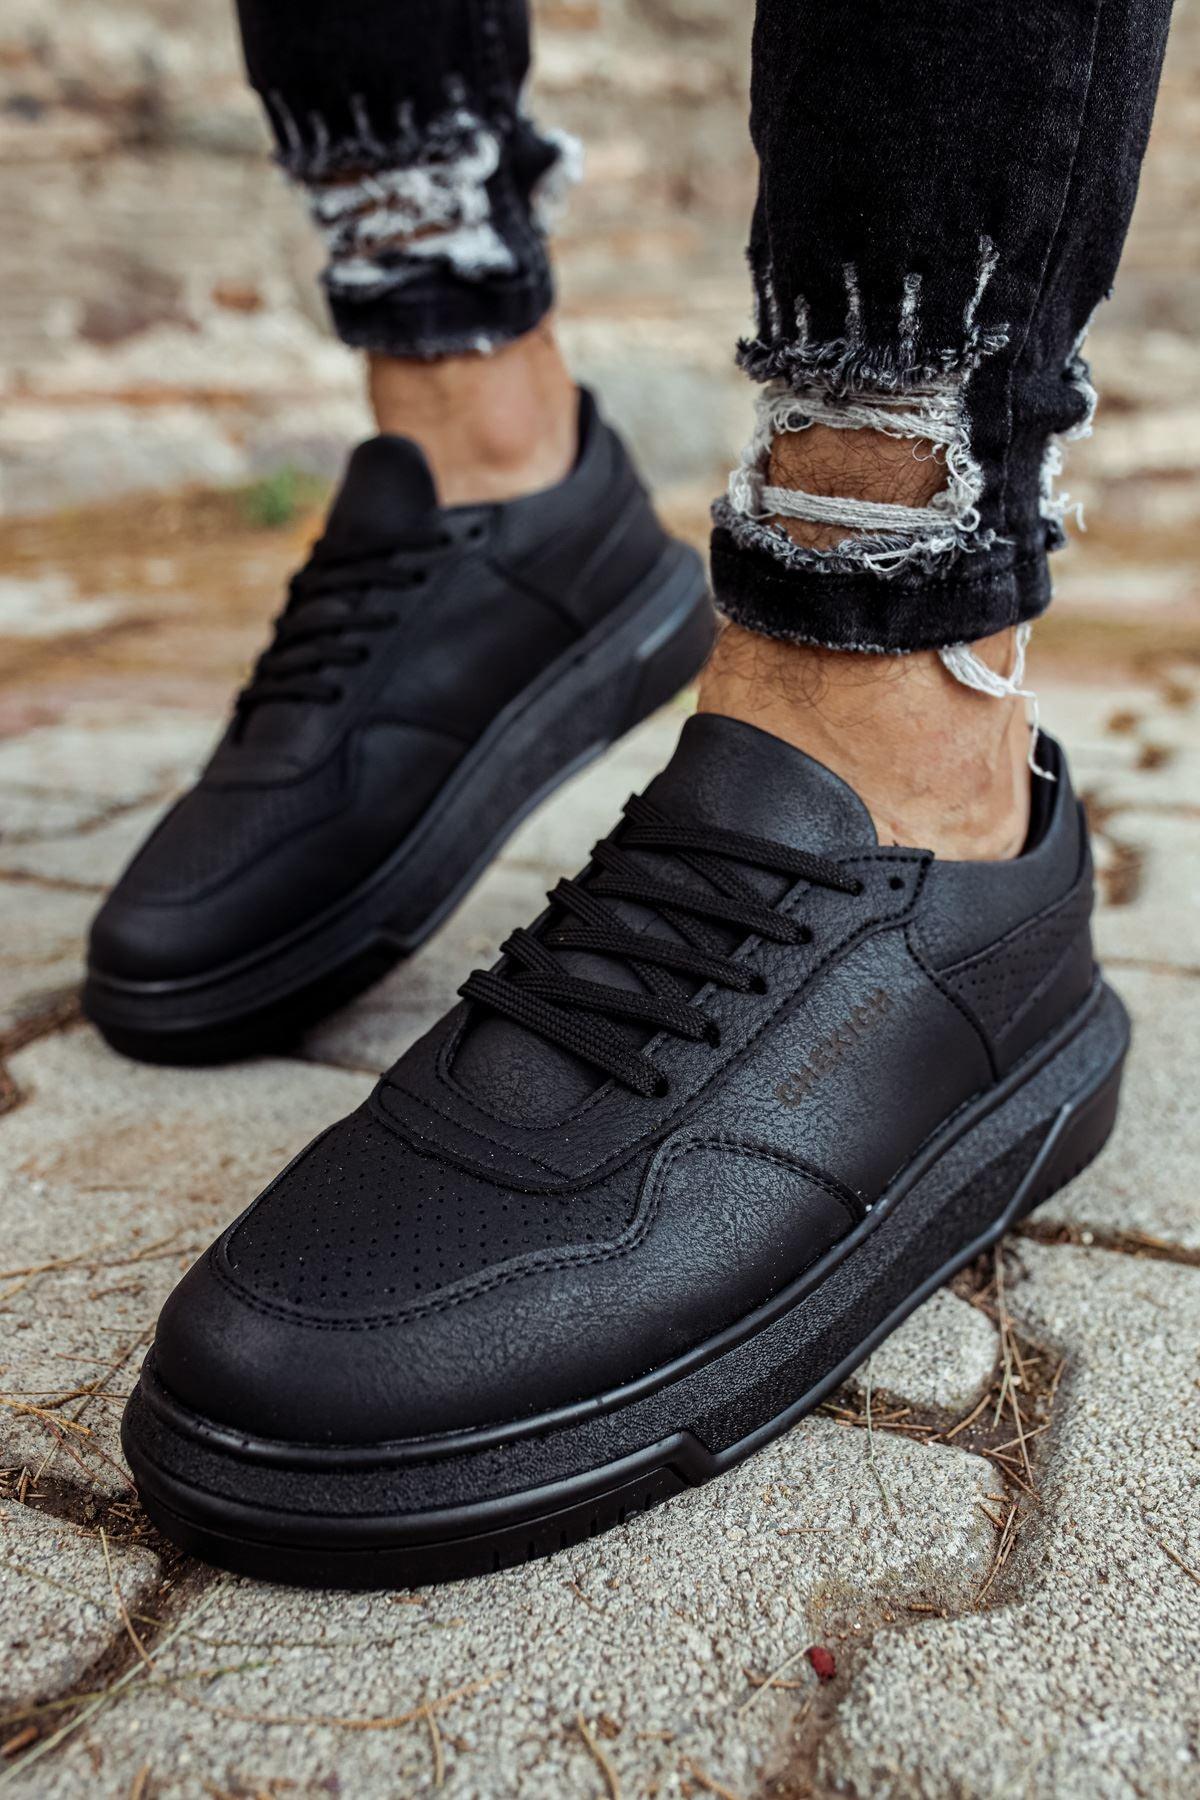 CH075 Black Sole Men's Unisex Sneaker Shoes - STREET MODE ™